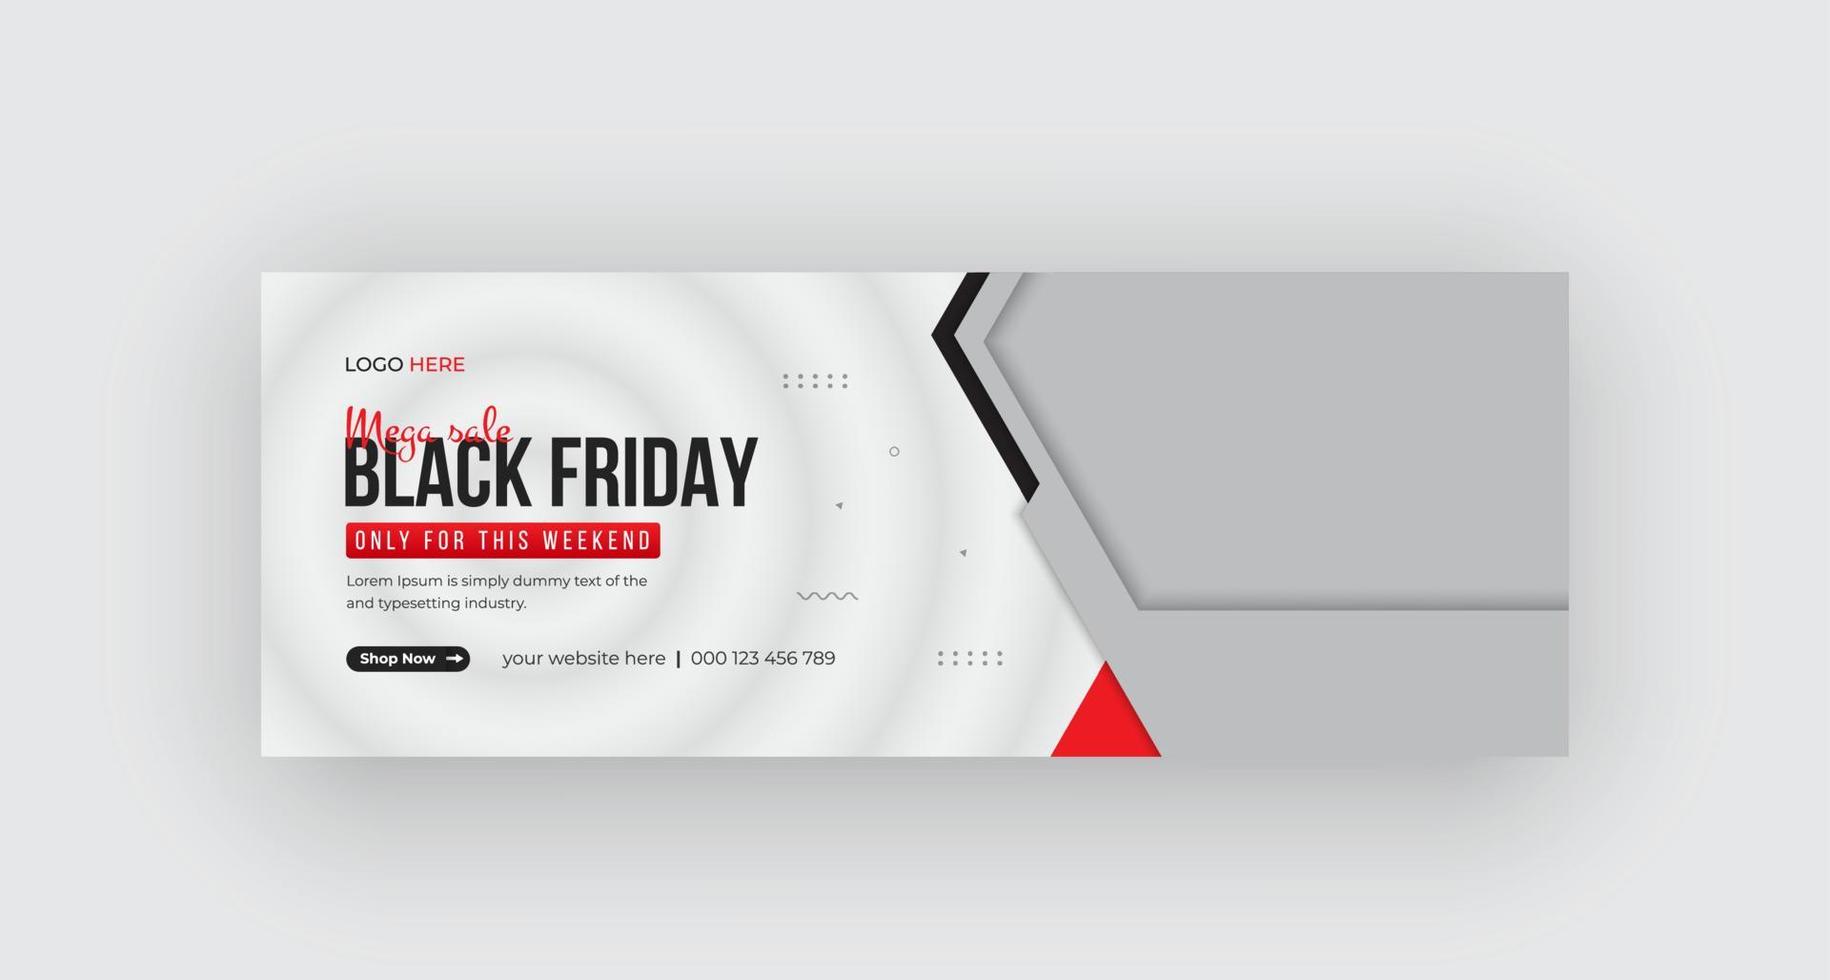 Black Friday timeline cover weekend sale social media banner design Pro Download vector